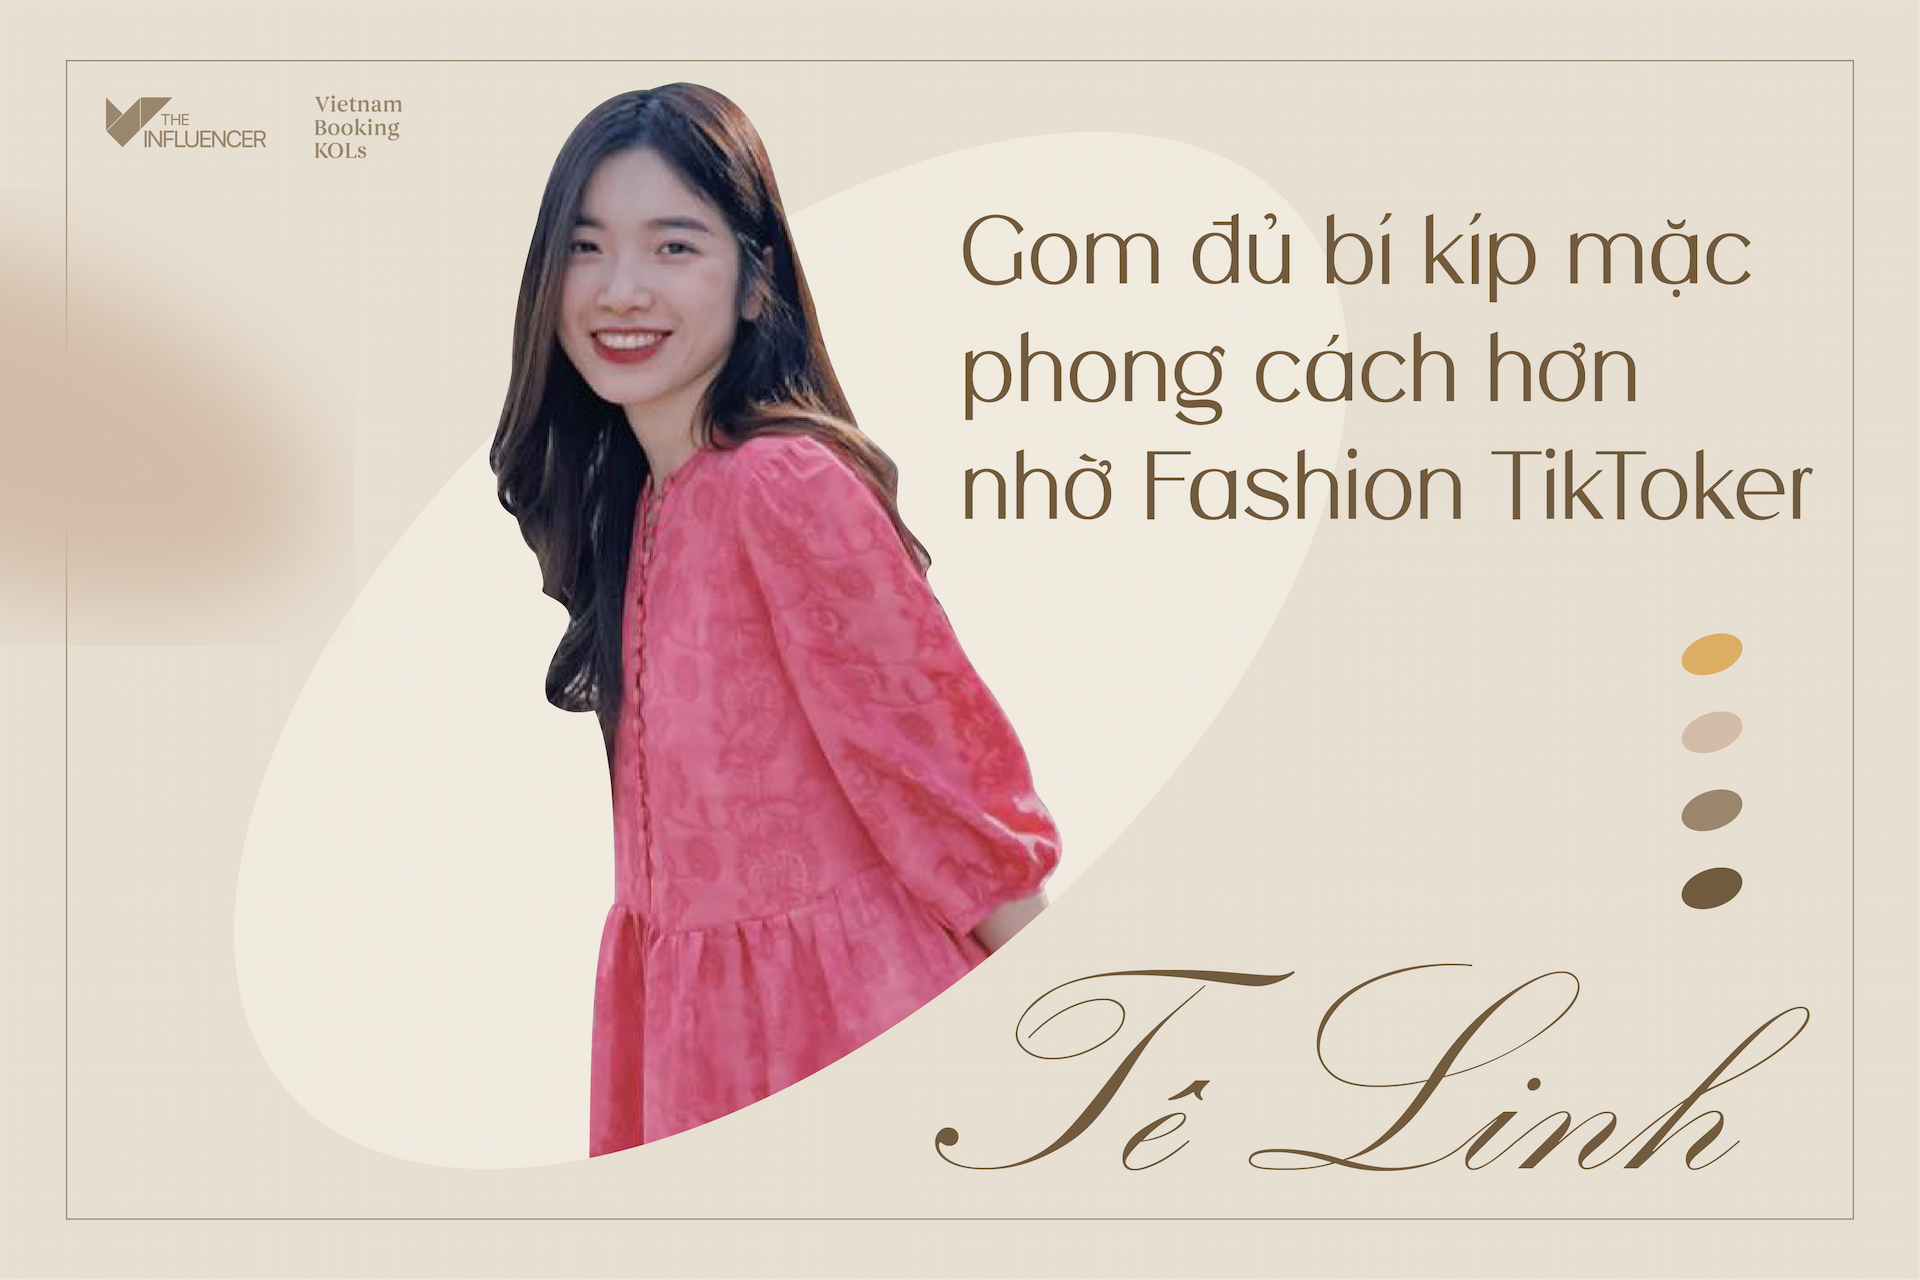 #Risingstar Tê Linh - Gom đủ bí kíp mặc phong cách hơn nhờ Fashion TikToker